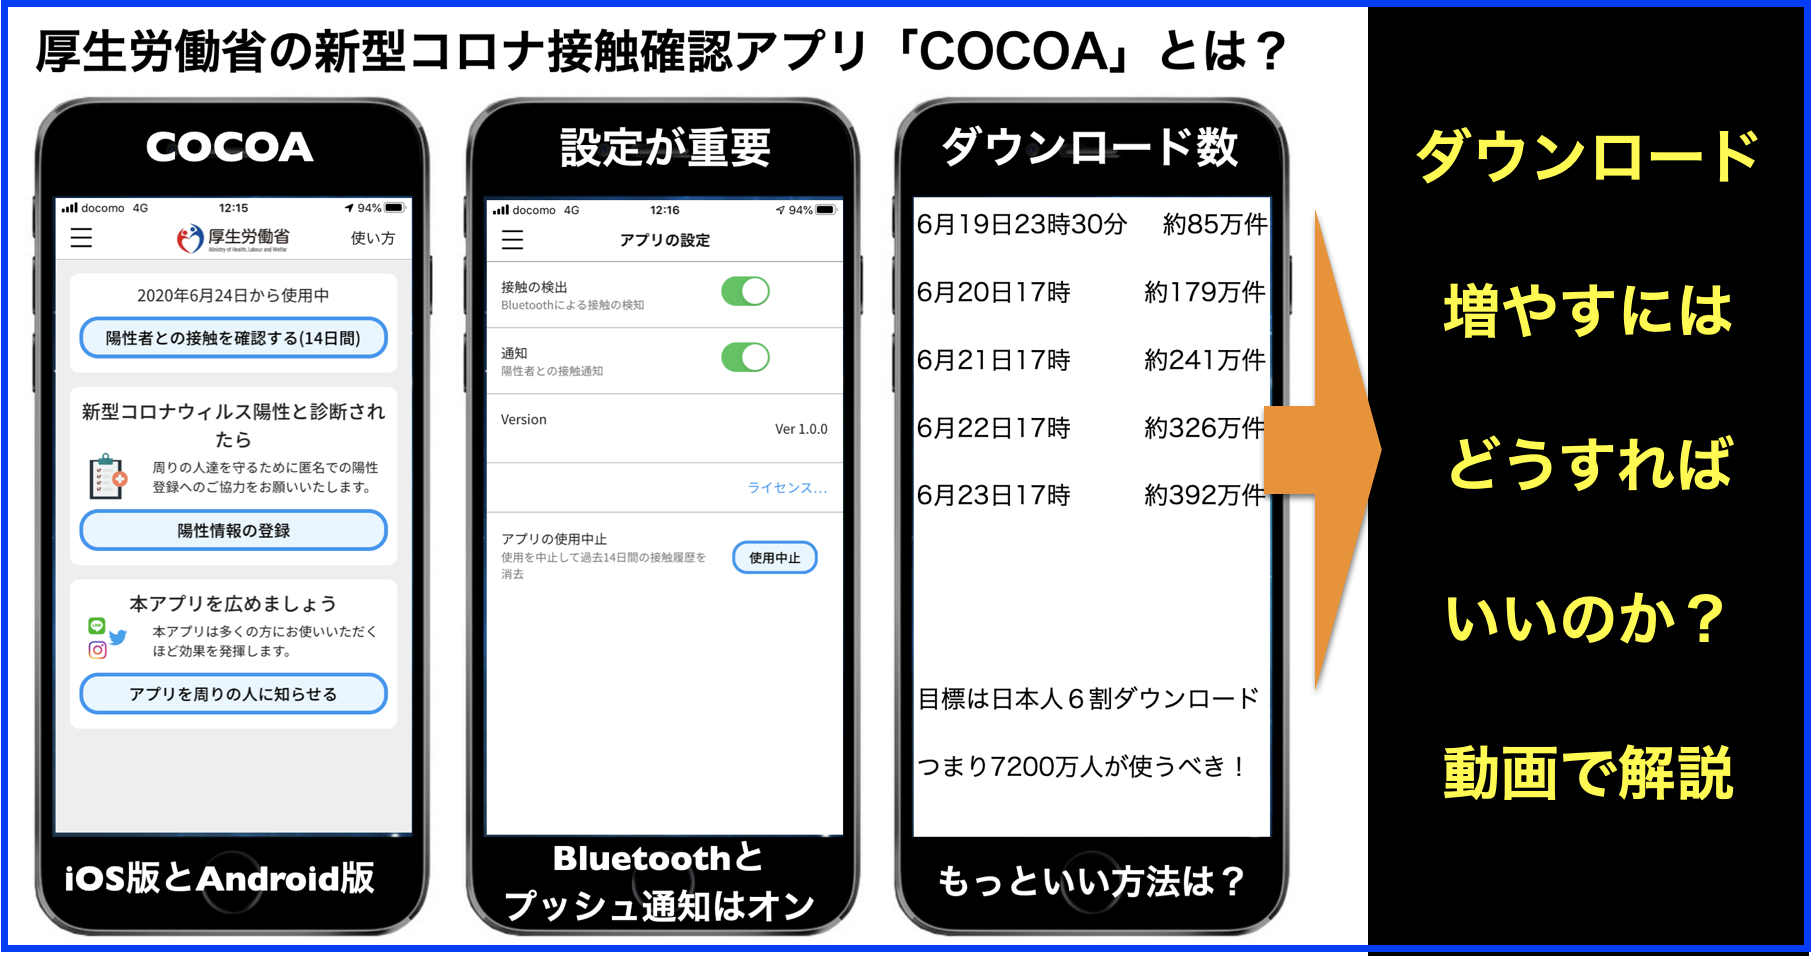 新型コロナウイルス接触確認アプリ #COCOA まとめ随時更新